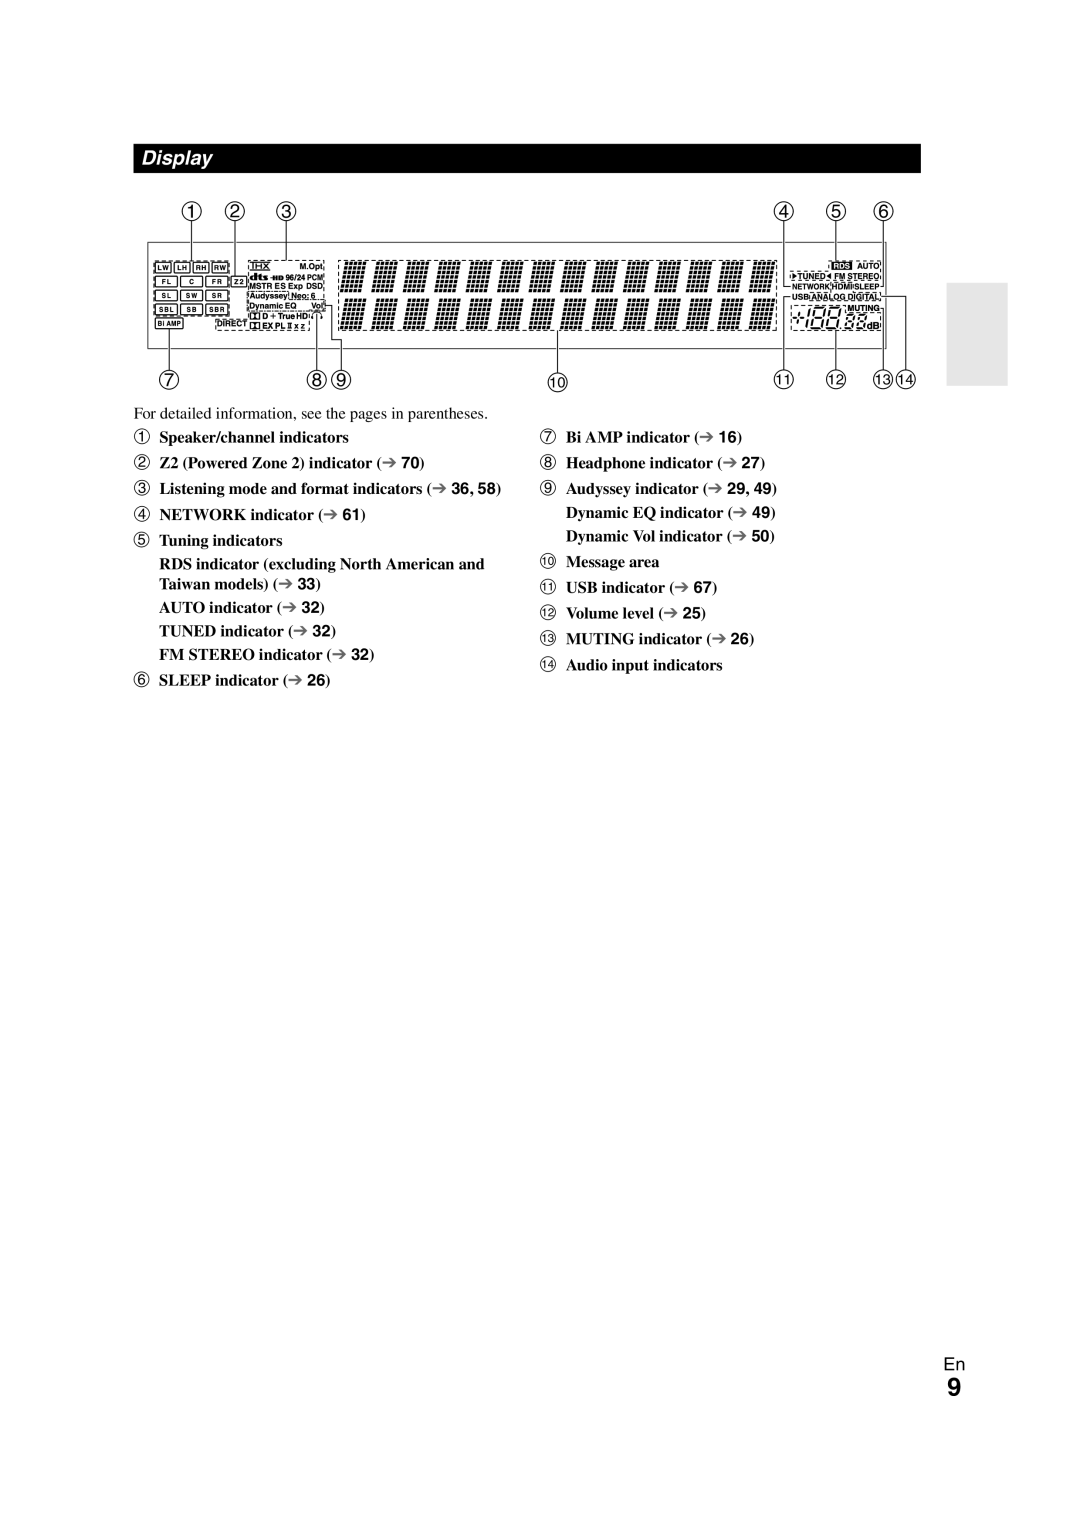 Onkyo TX-NR708 instruction manual Display, a b c, d e f, k l mn 